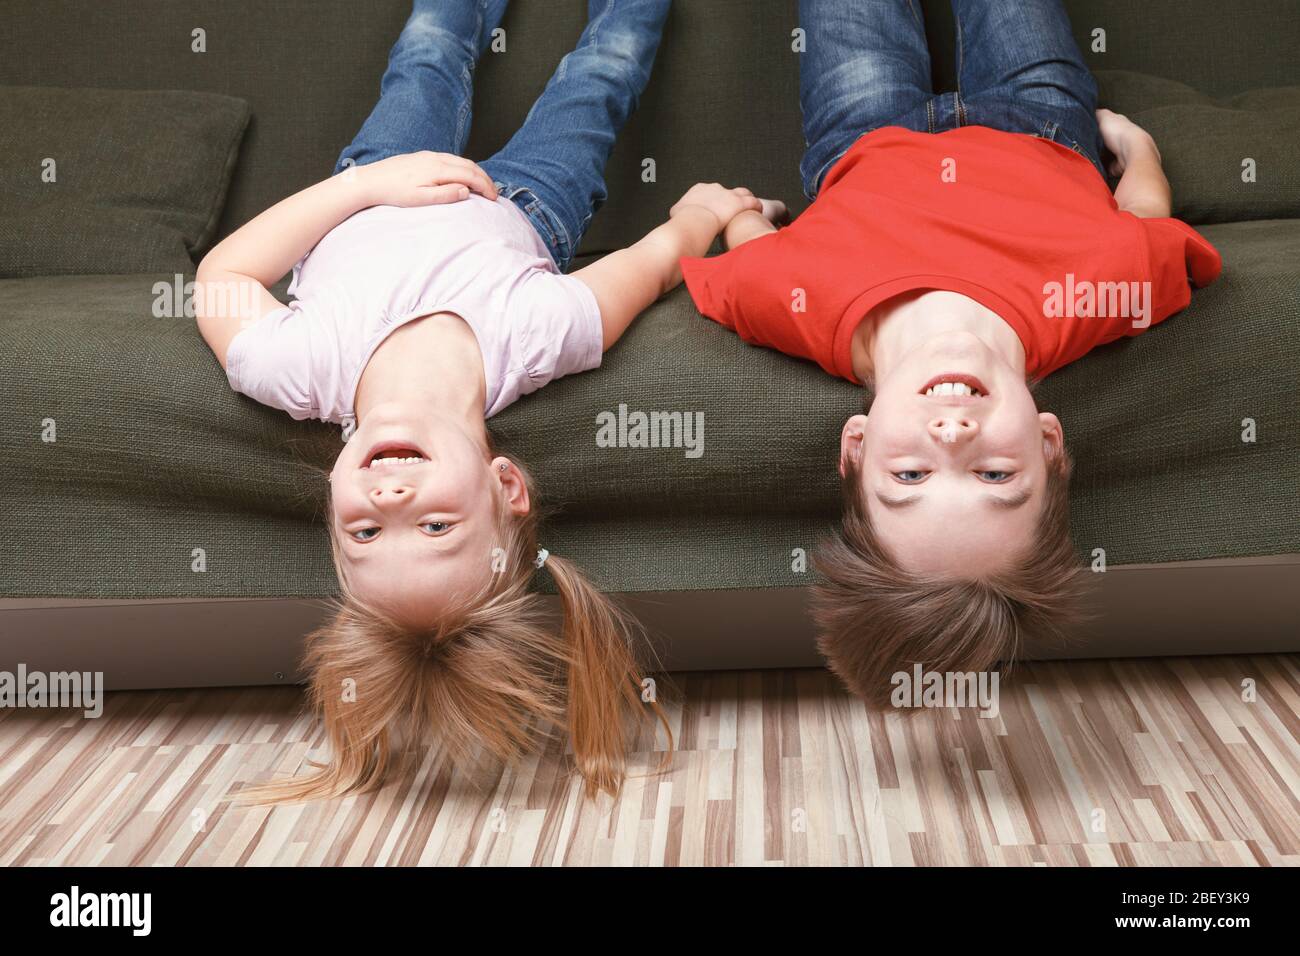 Fratelli felici che si posano sul divano godendosi stare insieme a casa durante l'isolamento di fronte con misure protettive contro la diffusione di coronaviru Foto Stock